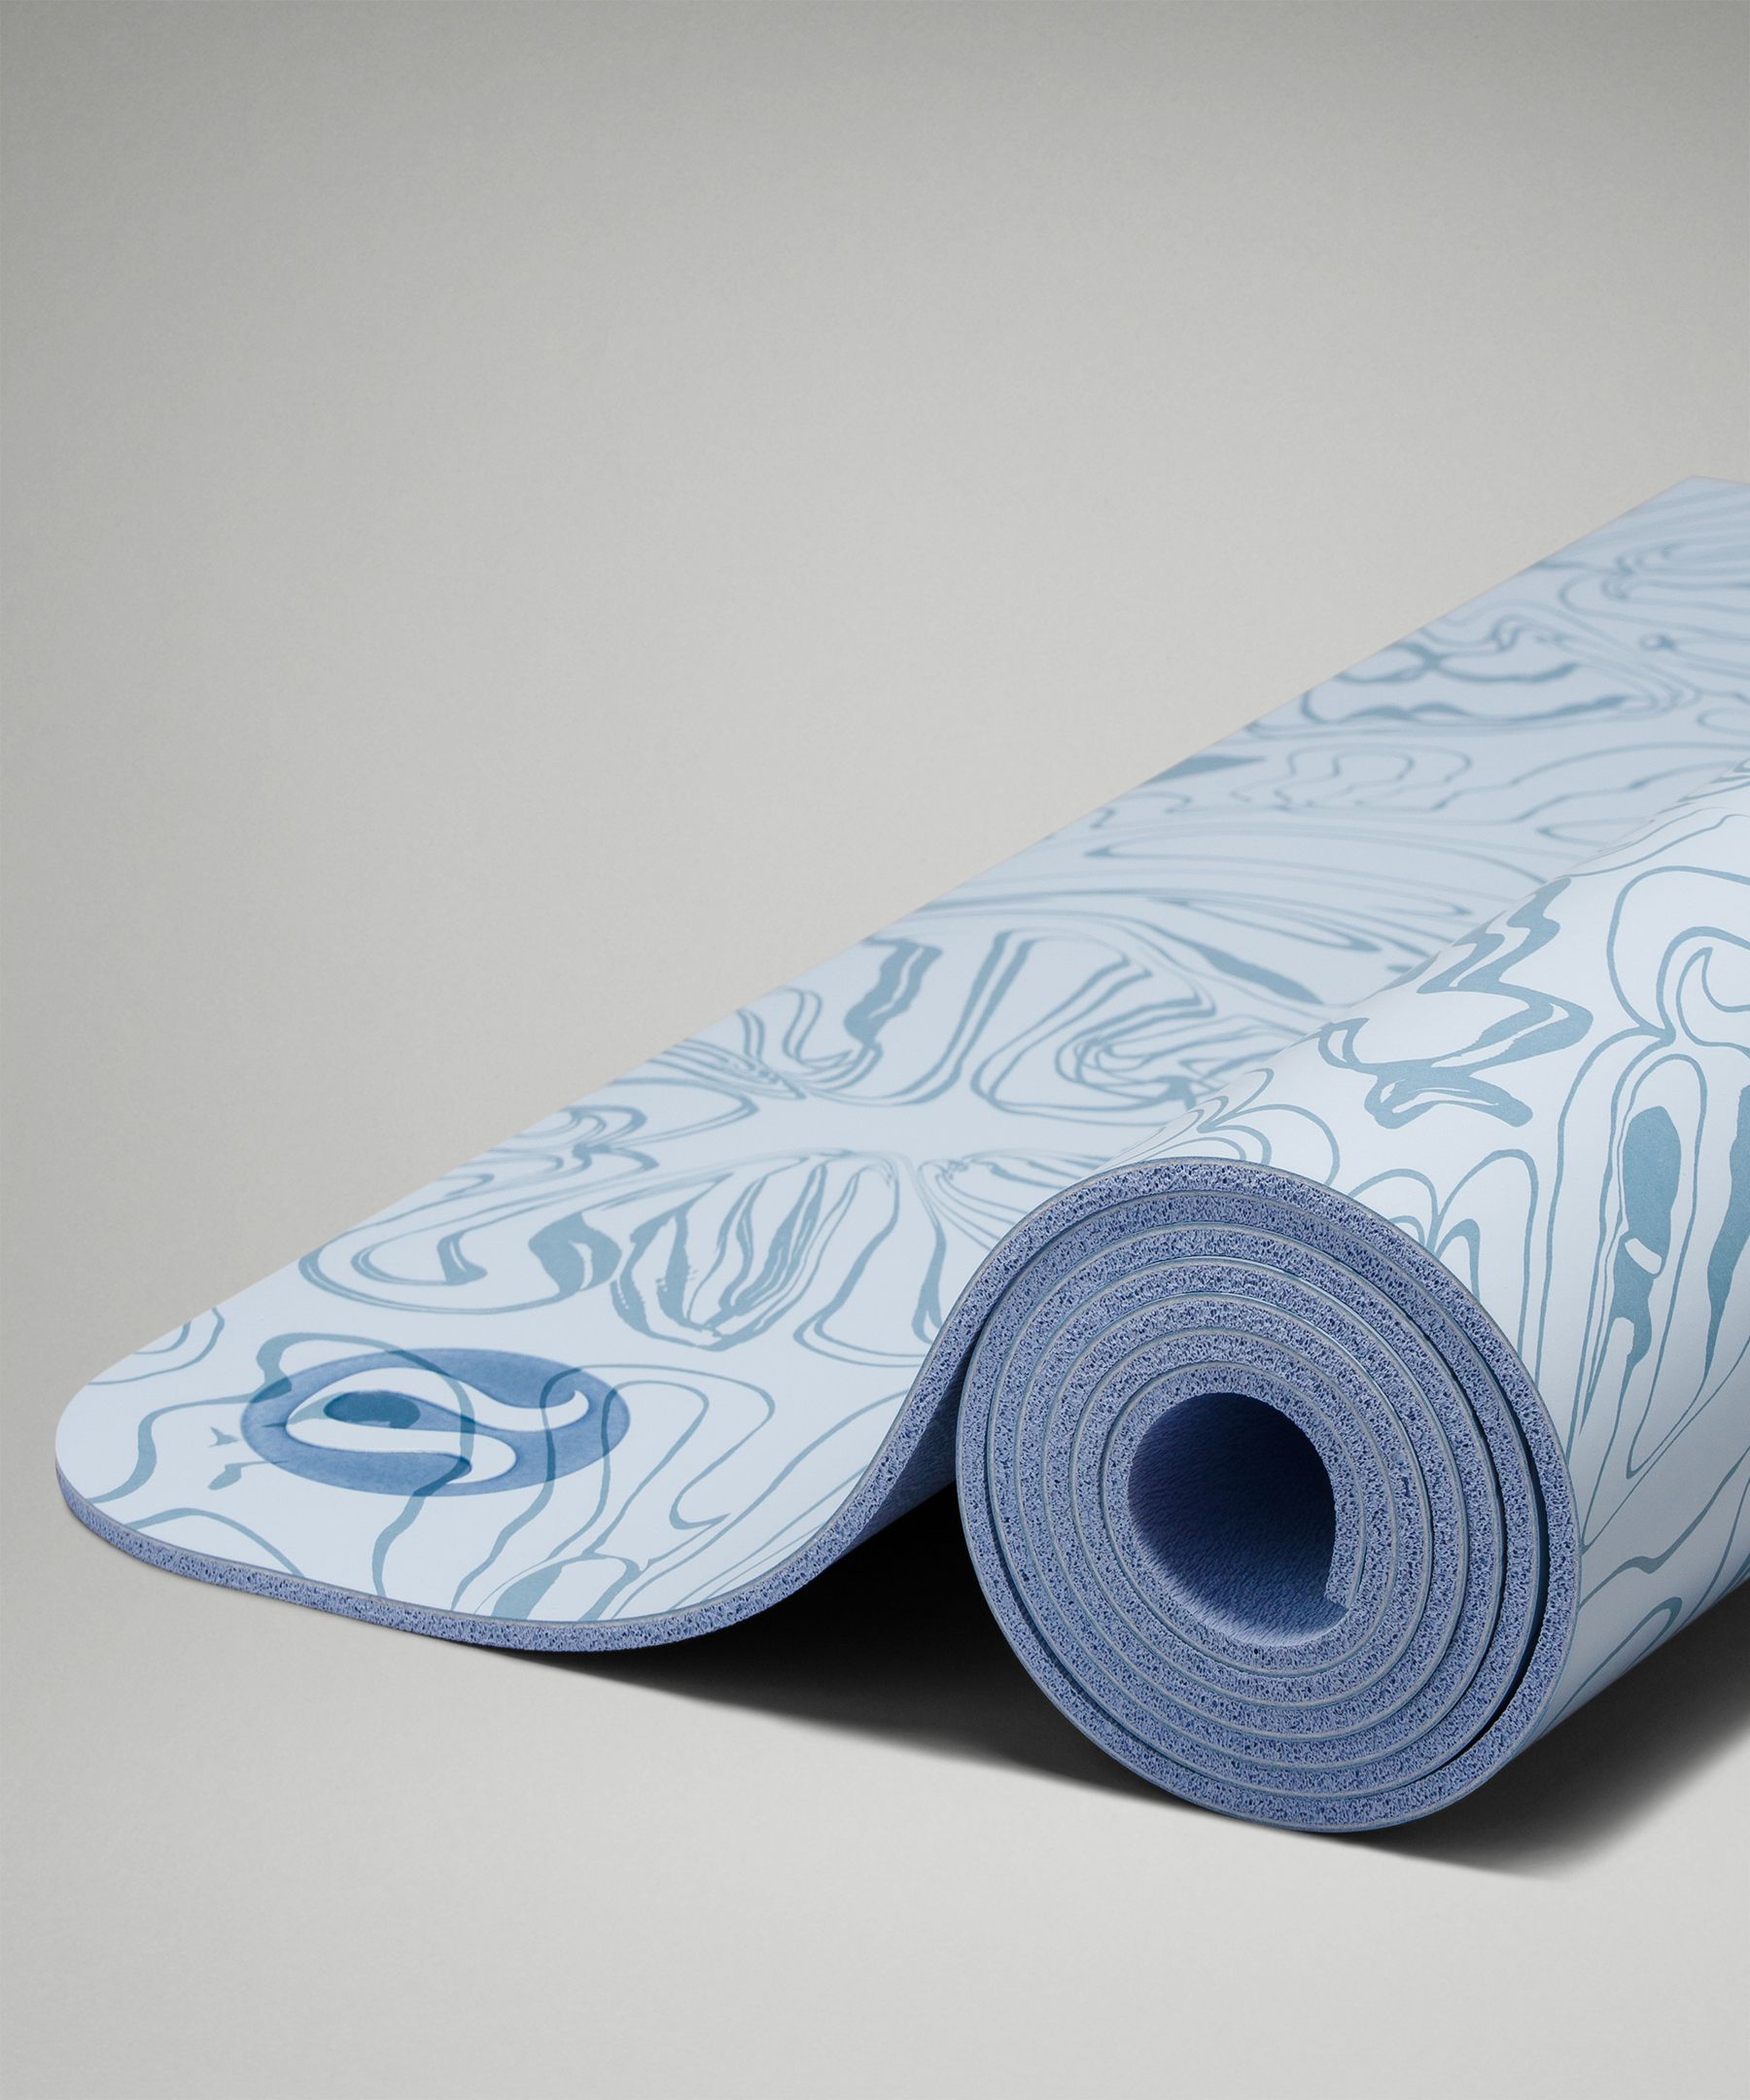 Shop The Set: Yoga Essentials Kit  Yoga essentials, Lululemon yoga mat, Yoga  mats design